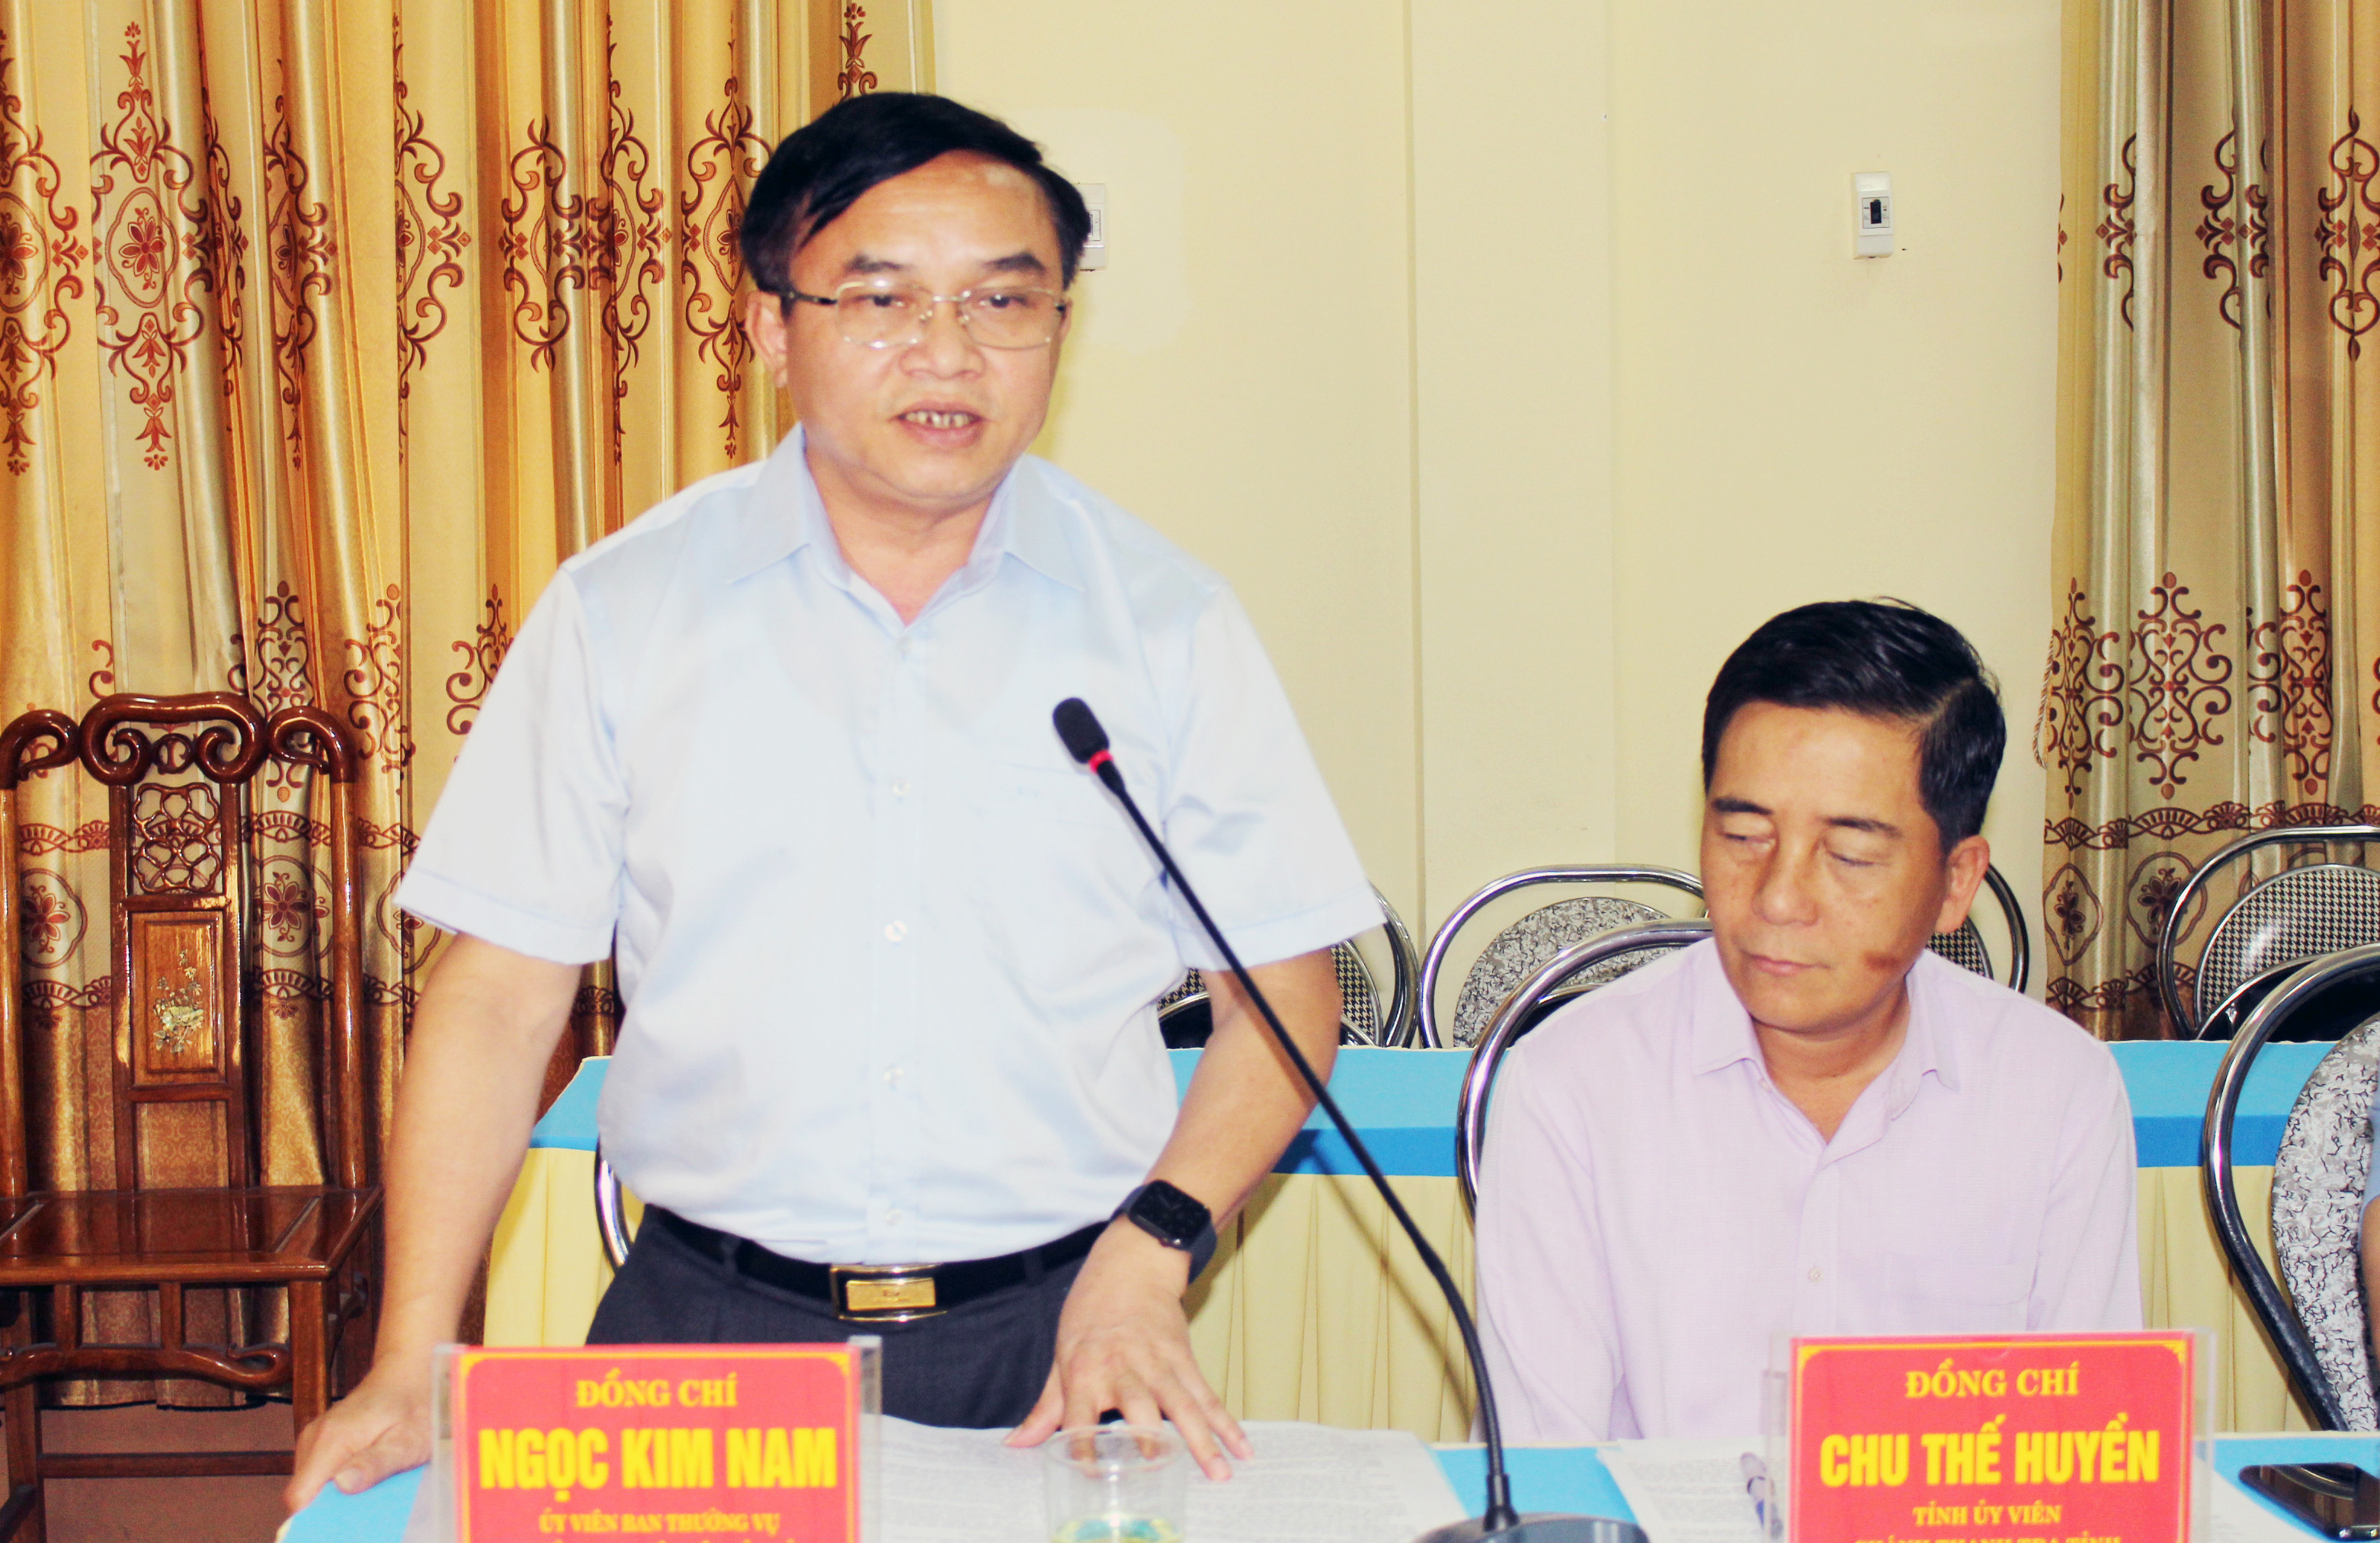 Đồng chí Trưởng Ban Dân vận Tỉnh ủy Ngọc Kim Nam phát biểu tại cuộc làm việc với UBBC huyện Quỳ Hợp. Ảnh: Thanh Quỳnh